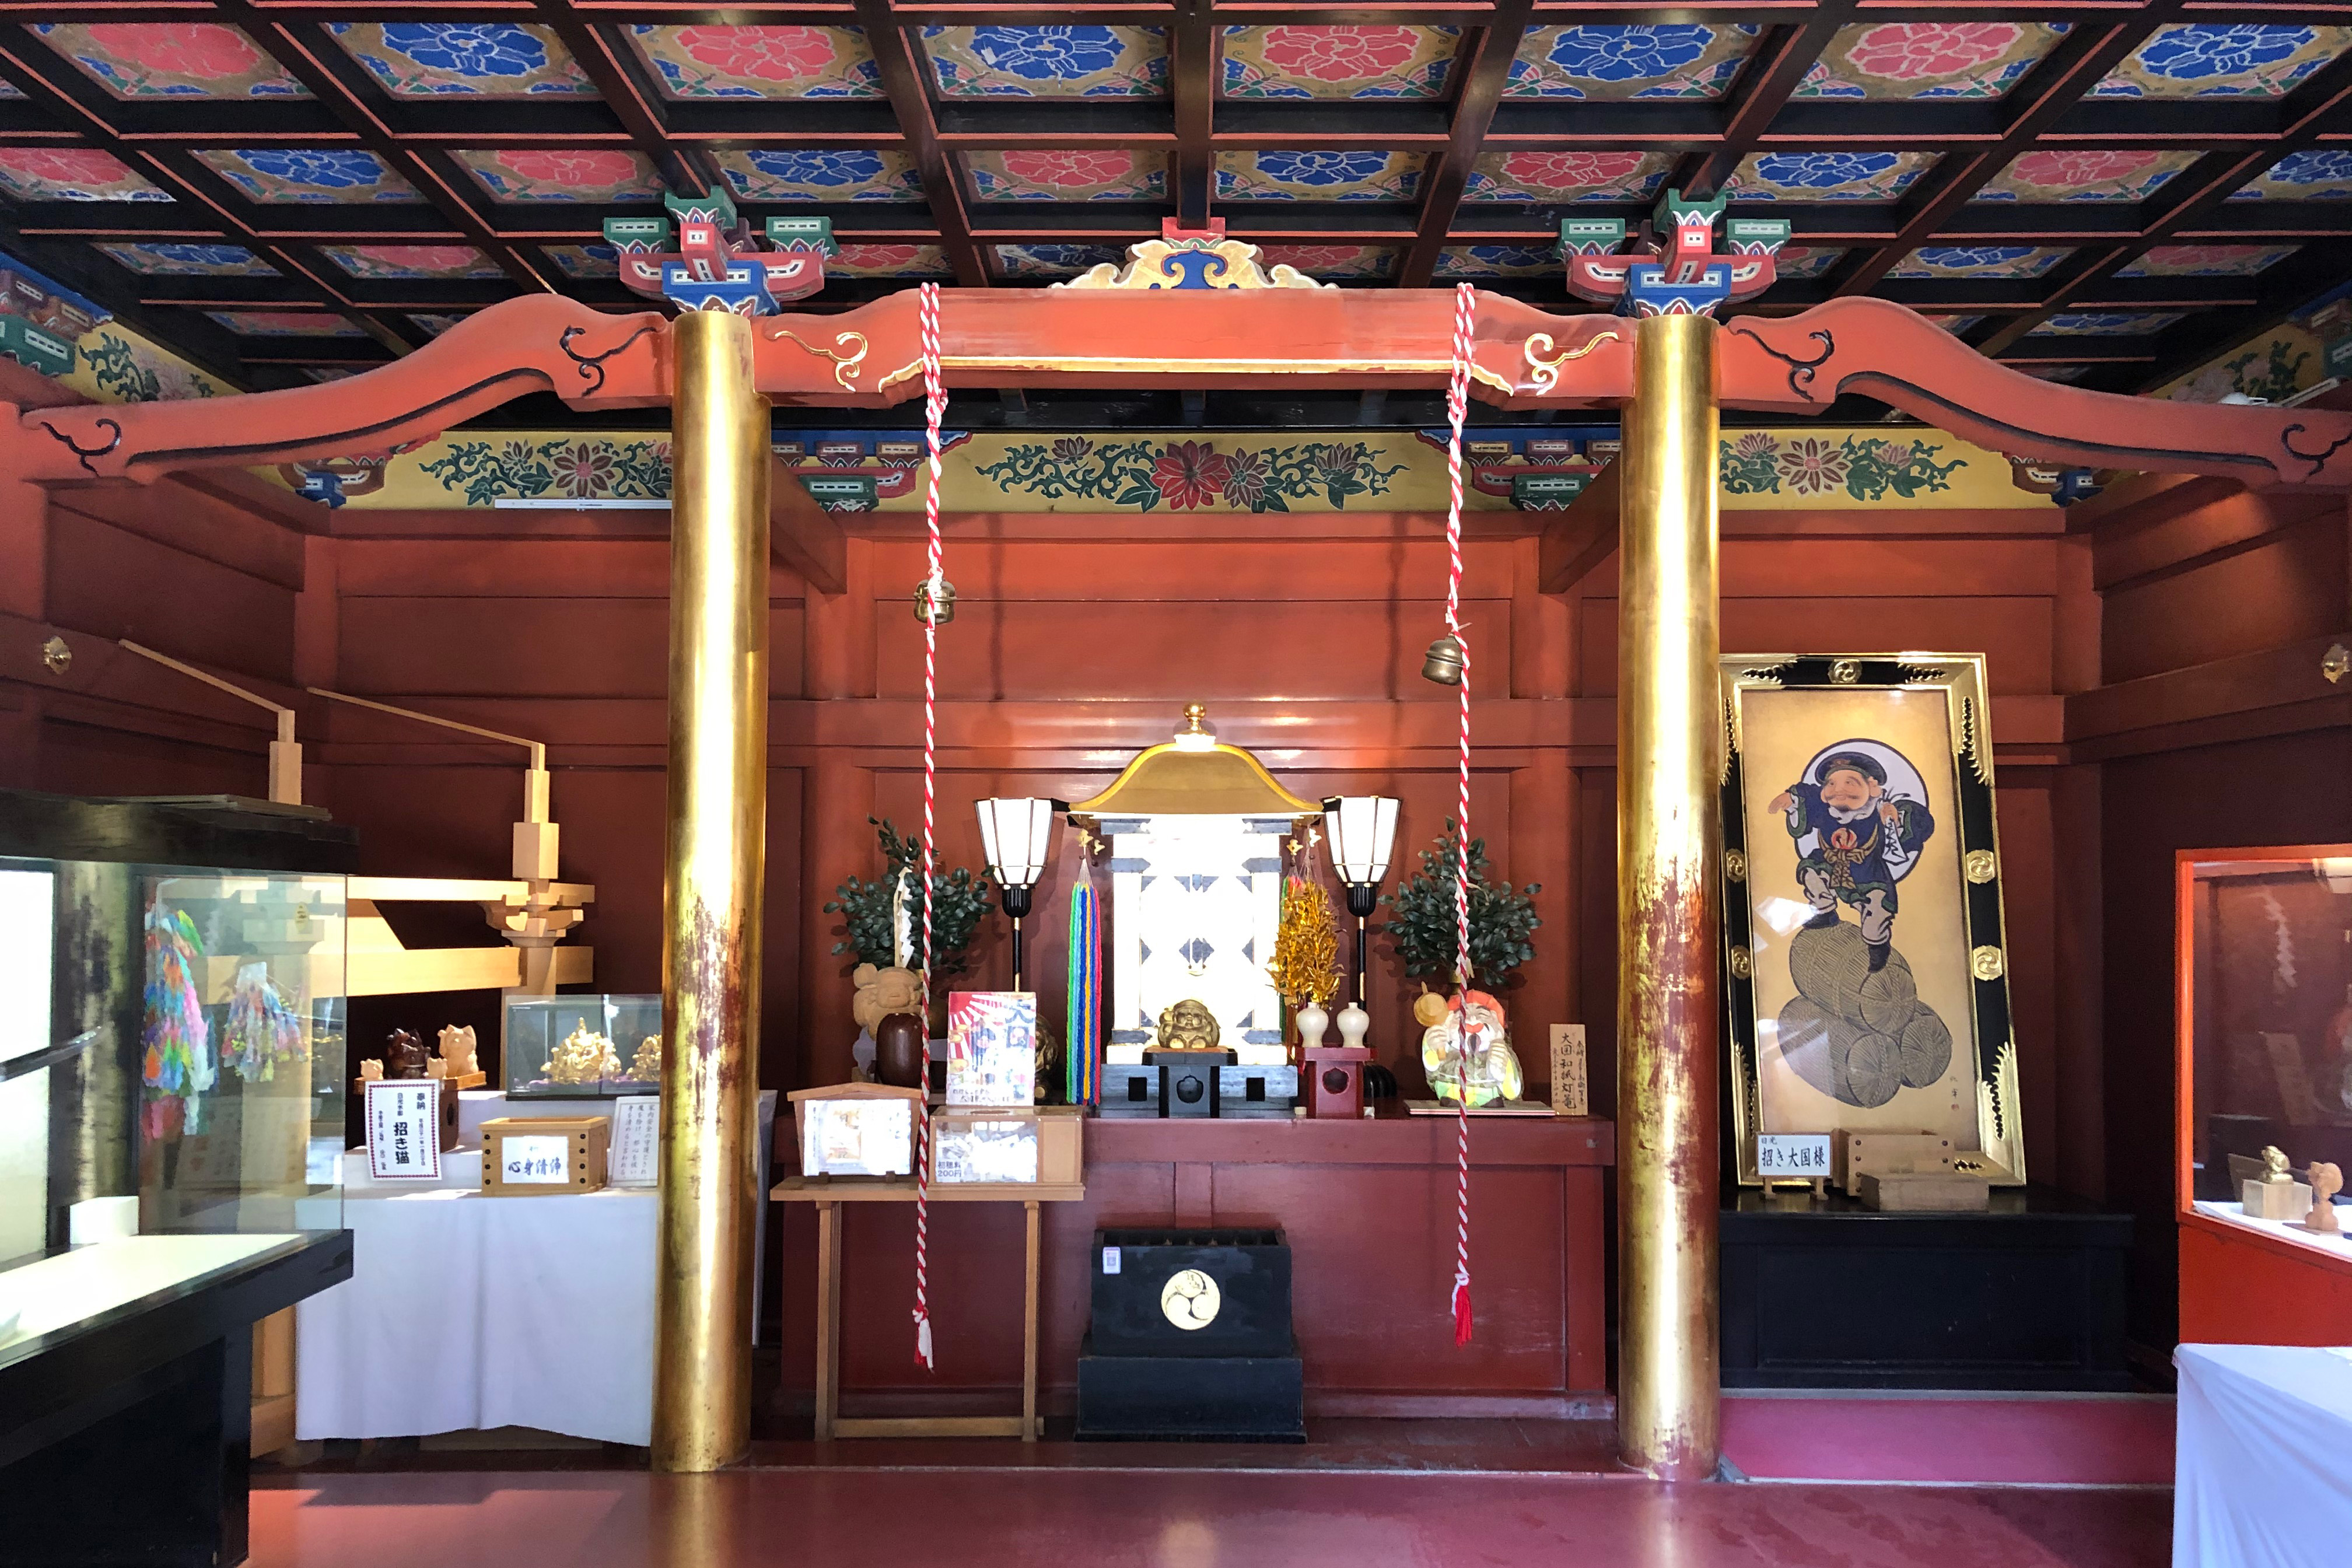 修建于1745年，供奉着在日本被广泛信仰的招福之神“大黑天（摩诃迦罗）”。在日光二荒山神社里，则被称作为“招福大国(黑)（Lucky Daikoku）”享有盛名。<br /><br />大黑天是佛教七福神之一，并被认为与掌管农业、商业、医疗的大已贵神是同一神祇。大已贵神在日本最早的史书《古事记》（公元712年）中也有记载。在到明治时代(1868年-1912年)之前，日本的佛教与神道相互融合，日光二荒山神社也就同时供奉着大已贵神和大黑天两位神明。<br /><br />大国殿內除了供参拜的供奉处之外，还摆放着各种大黑天的画像。<br /><br />立于入口右侧的石像是田道间守。田道间守是大和时代（250年-719年）传说中的人物，据说 “神仙果”就是由他受命带回日本的。这尊石像右手所持的橘枝是柑橘类的水果。他也被奉为点心之神。